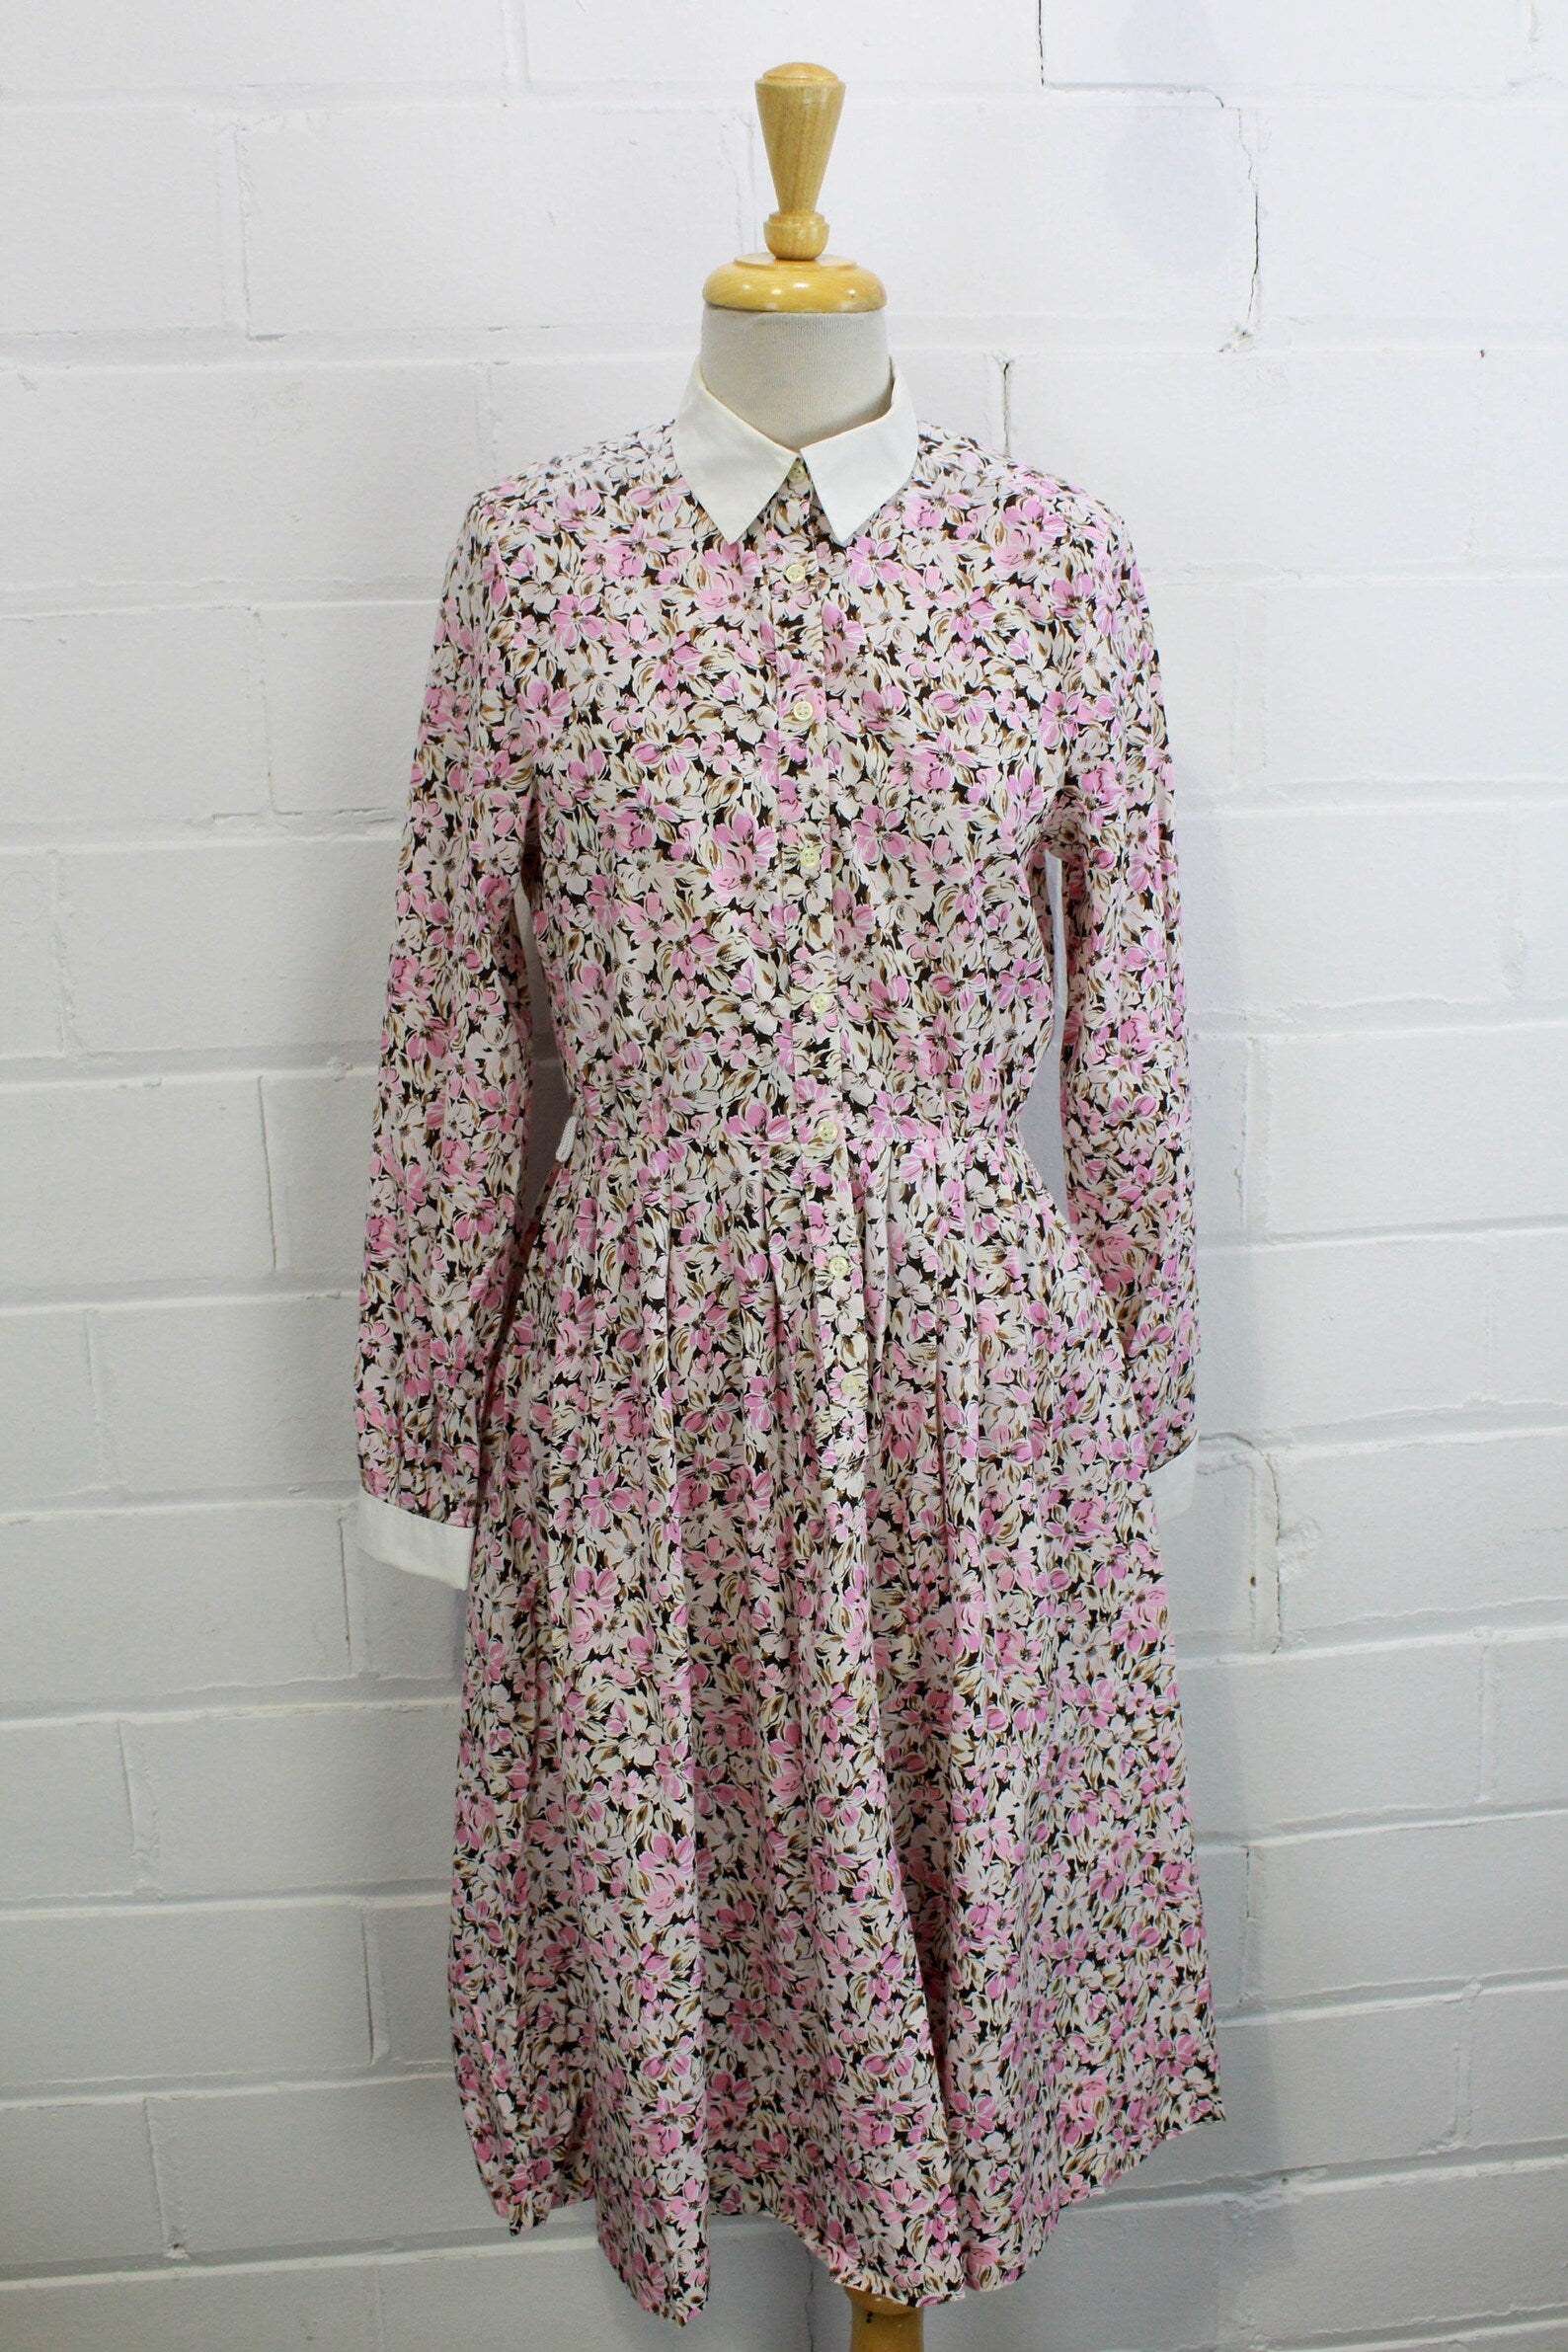 216 Schoolmistress' Shirtwaist & Skirt - Folkwear